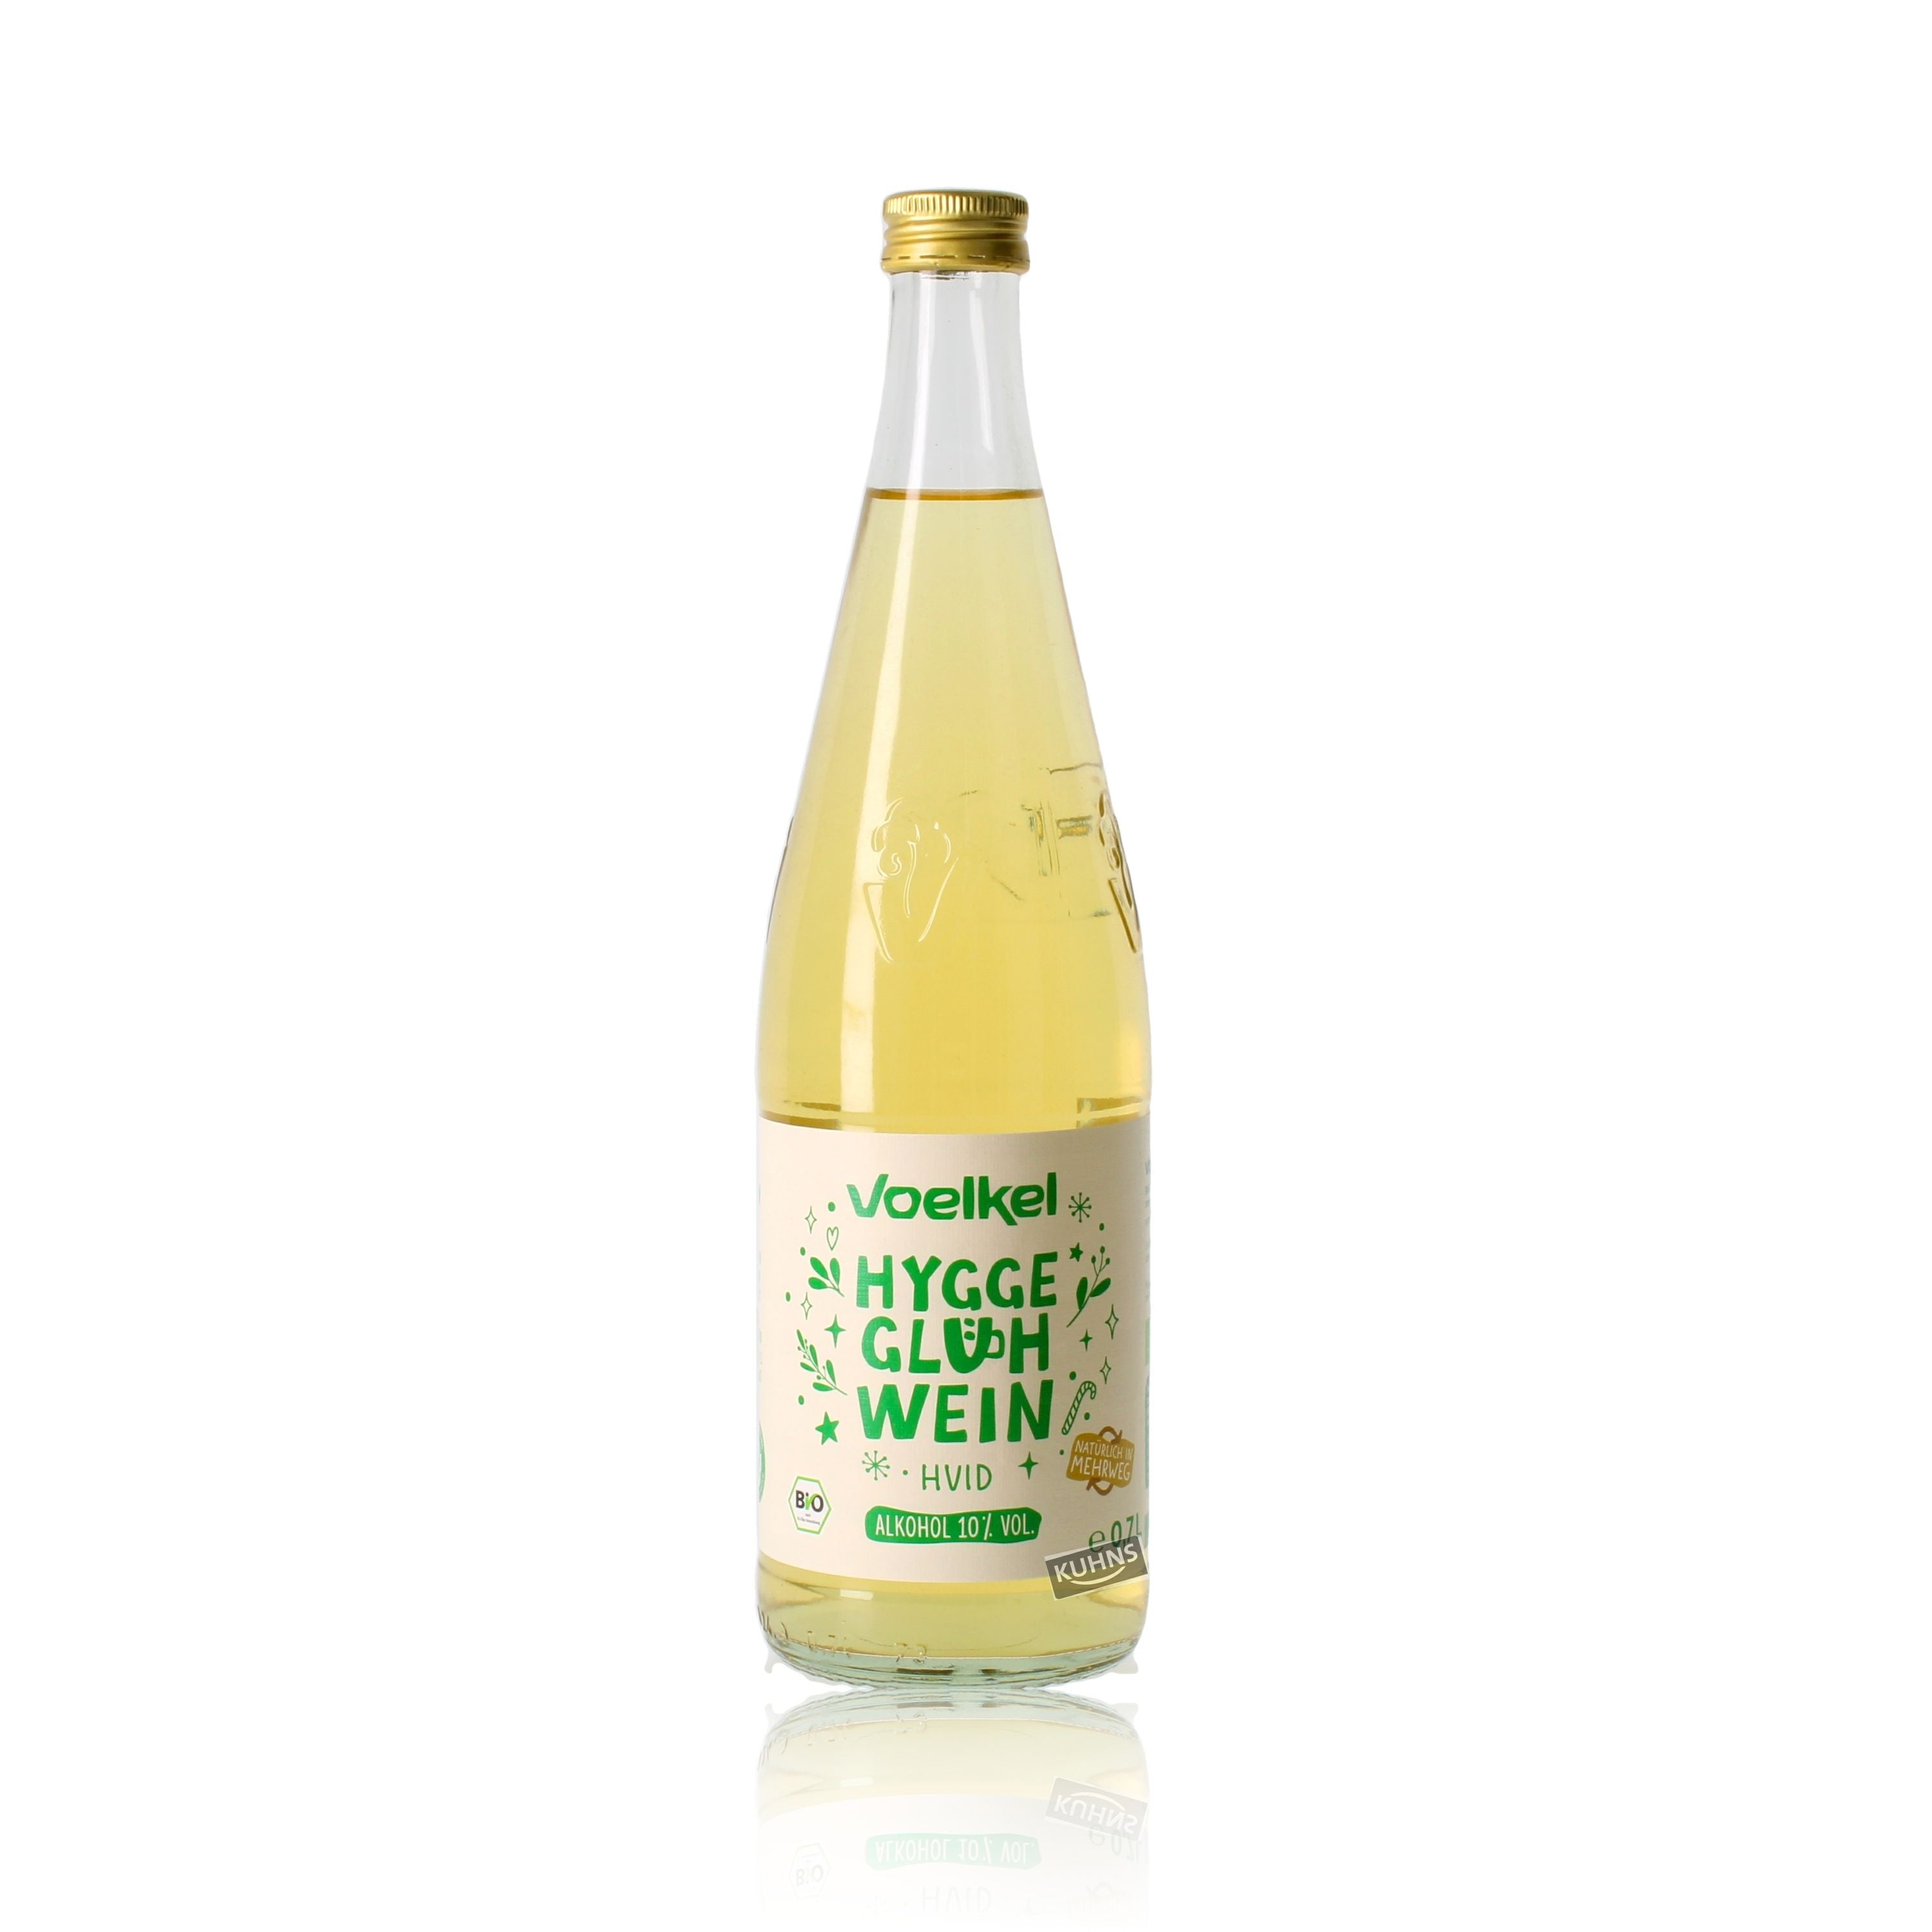 Voelkel Hygge Glühwein Weiß 0,7l, alc. 10 Vol.-%, Glühwein Deutschland